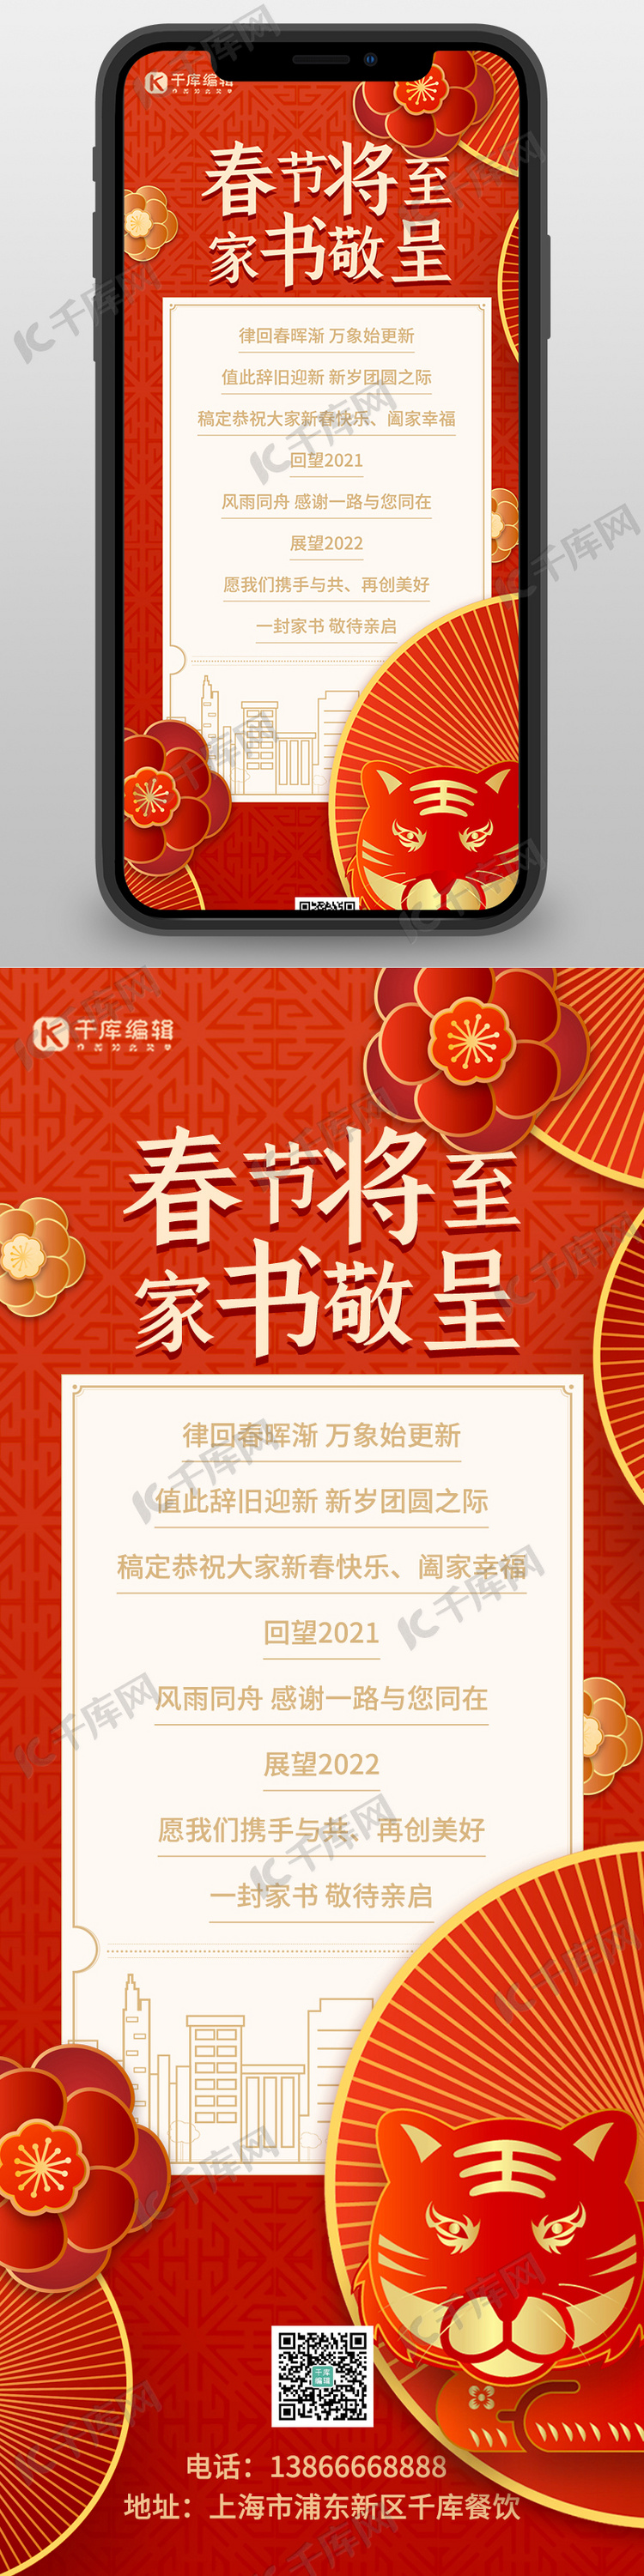 新年祝福新年贺卡红色中国风长图海报